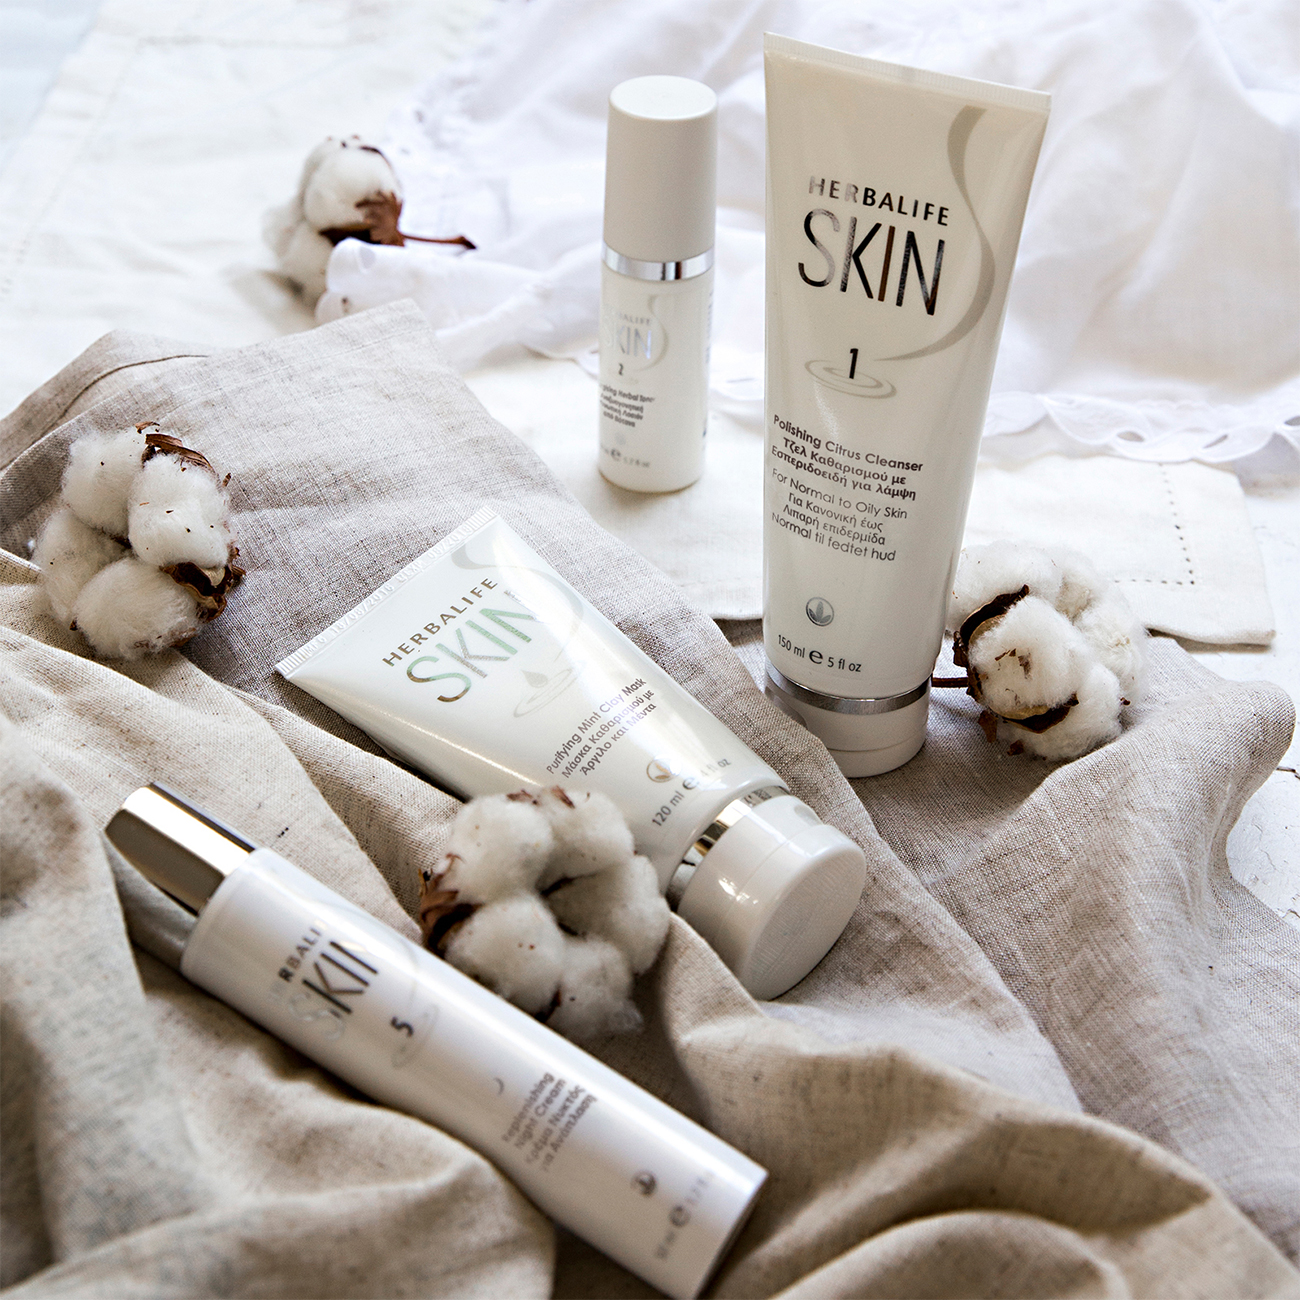 Productos para el cuidado de la piel de herbalife Skin exhibidos en un paño